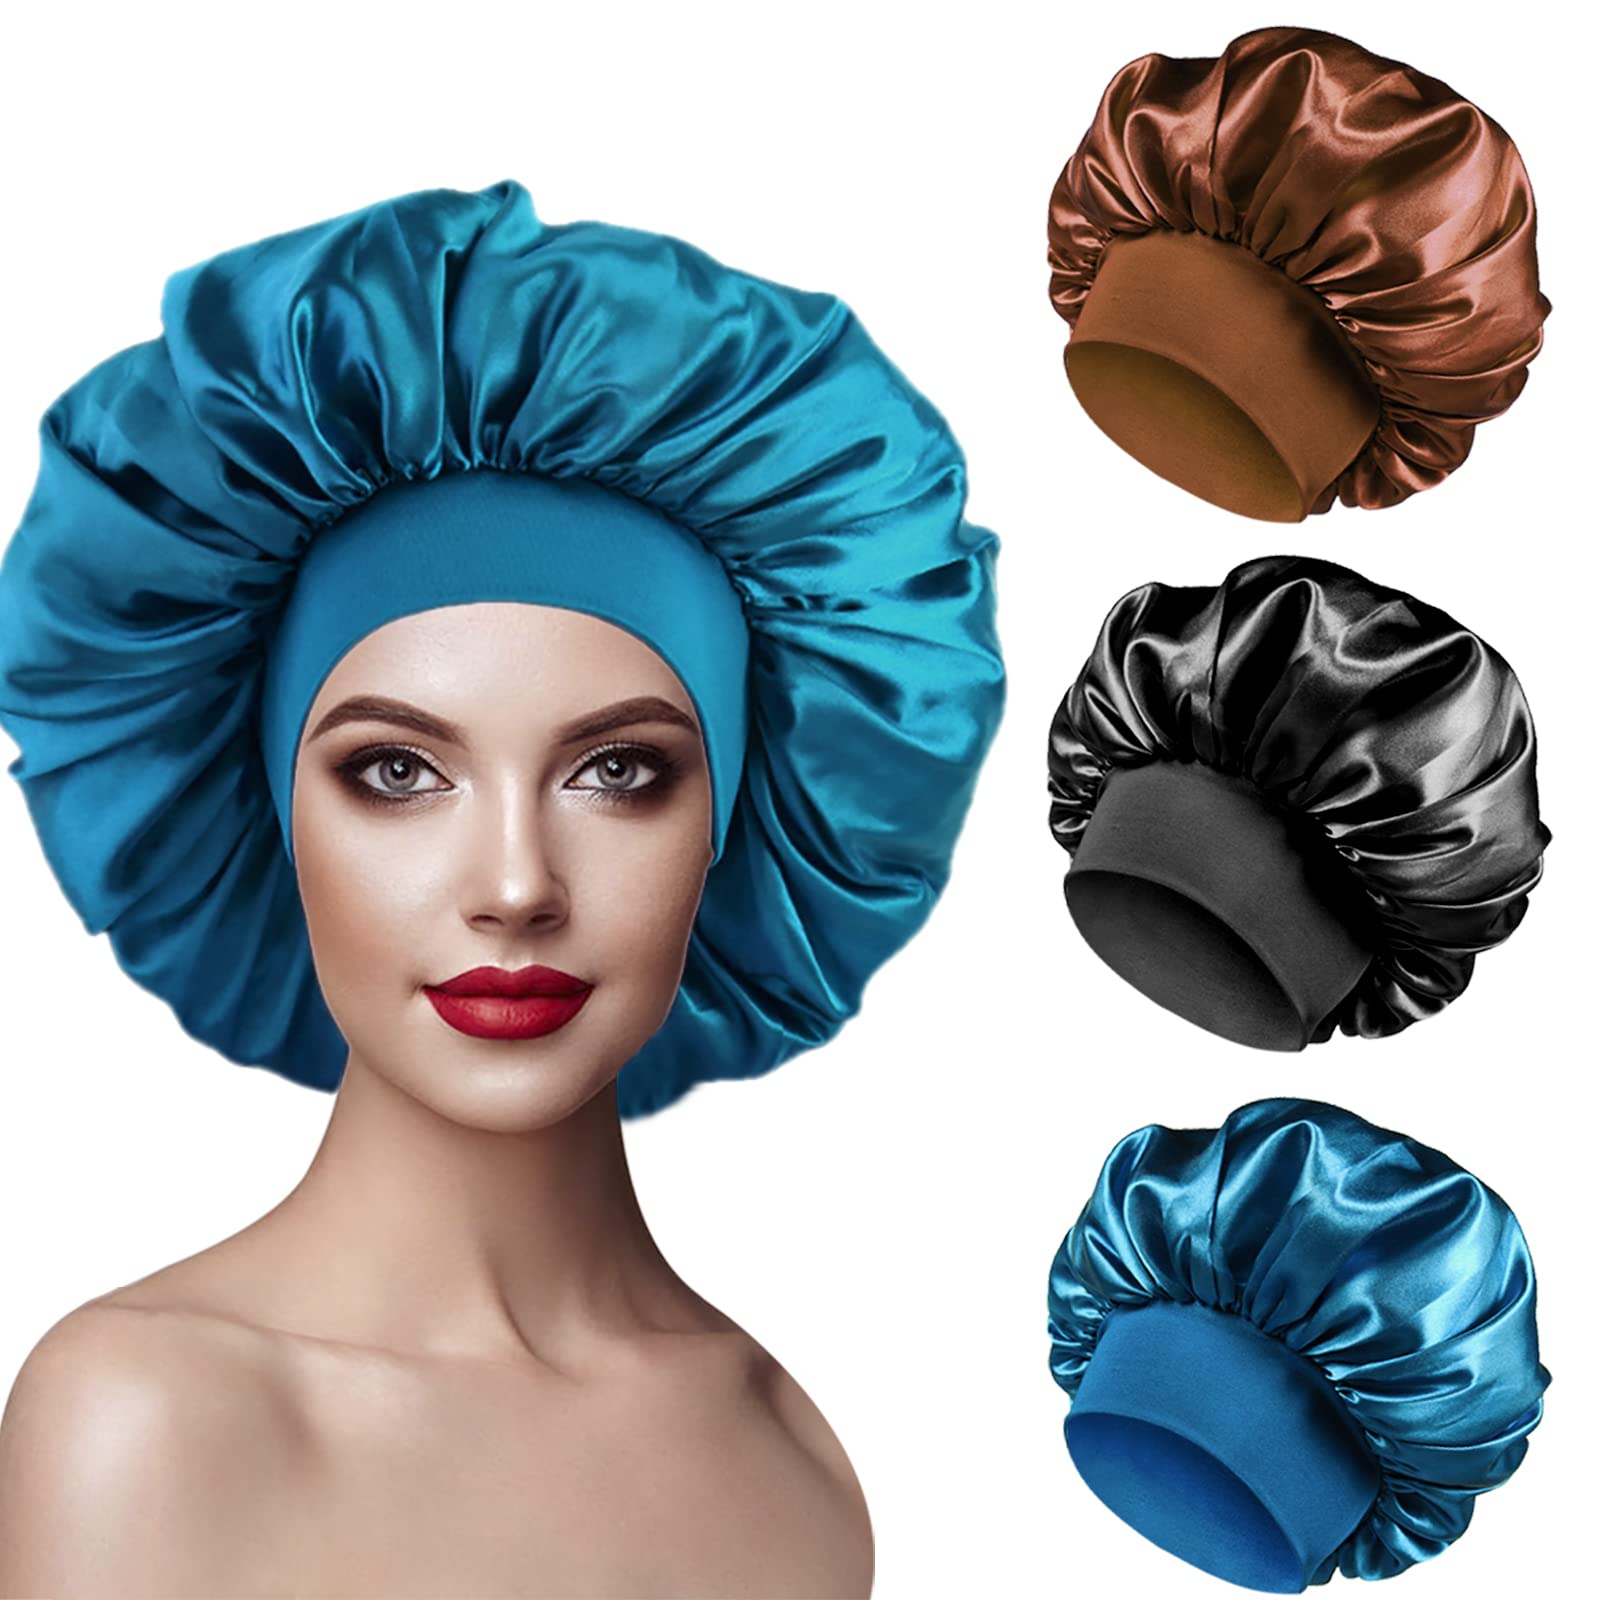 grand choix 3pcs Bonnet en Satin Cheveux Nuit, Bonnet Soie Femme Élastique pour Protection Cheveux Longs Bouclés (Noir, Bleu, Café) HgPrXktbV meilleure vente